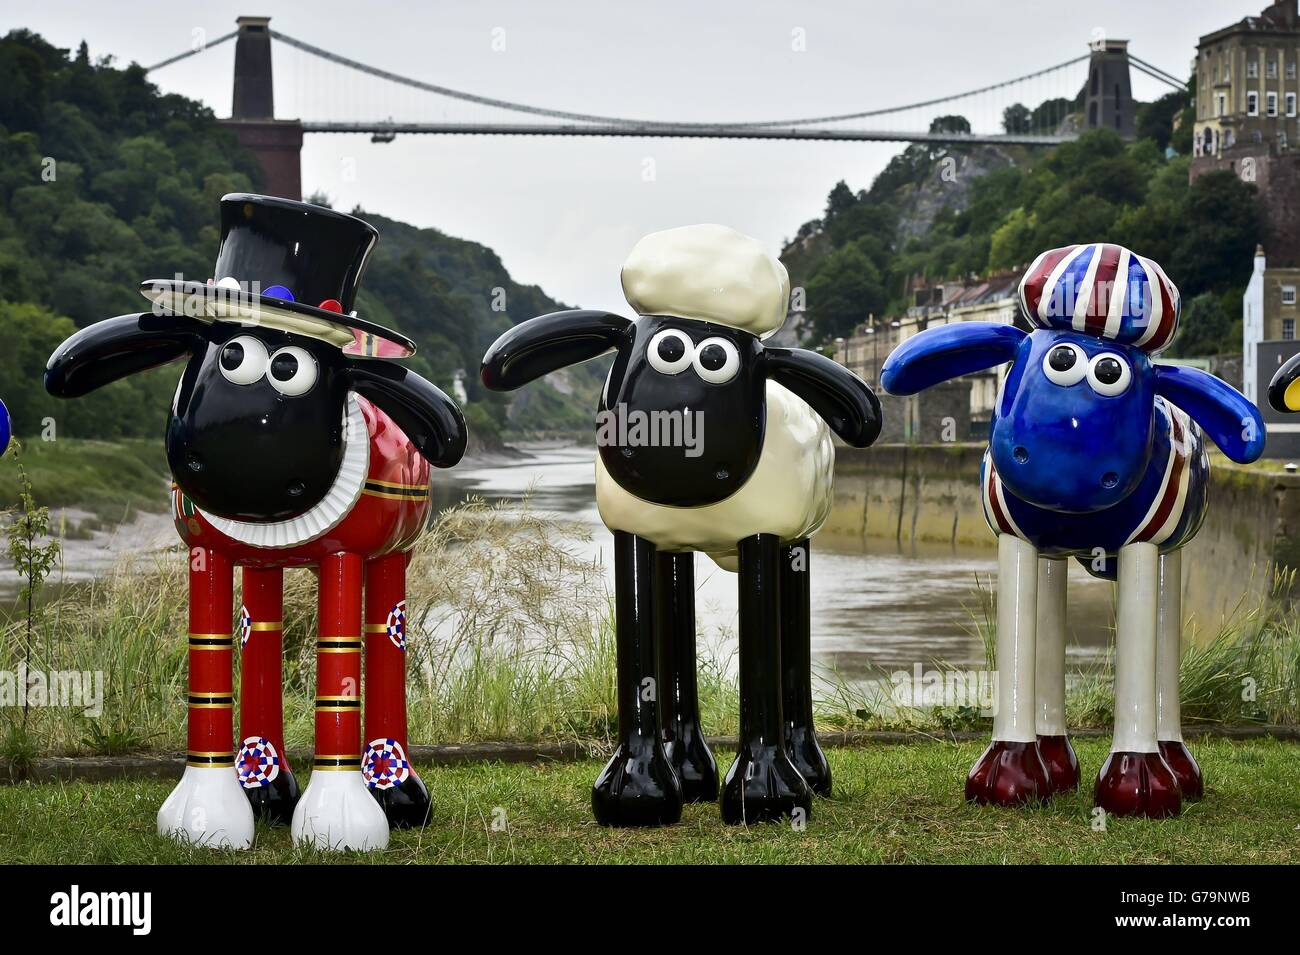 Sculptures géantes de Shaun les moutons qui se tiennent devant le pont suspendu Clifton de Brunel, Bristol, pour lancer un nouveau sentier artistique public, pour recueillir de l'argent pour les enfants malades l'été prochain. Banque D'Images